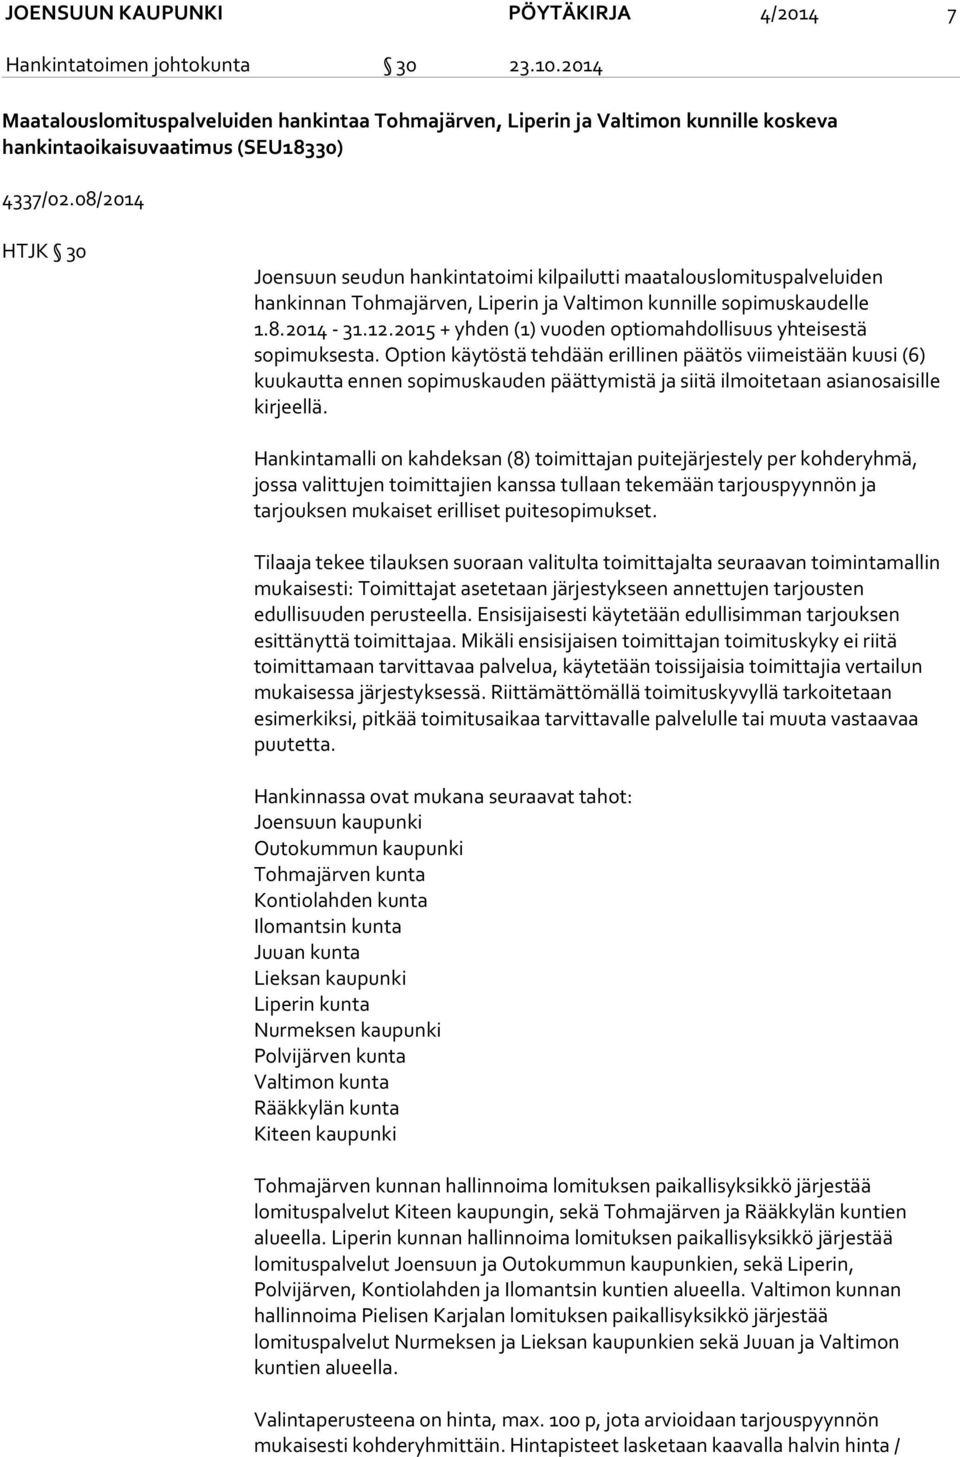 08/2014 HTJK 30 Joensuun seudun hankintatoimi kilpailutti maatalouslomituspalveluiden hankinnan Tohmajärven, Liperin ja Valtimon kunnille sopimuskaudelle 1.8.2014-31.12.